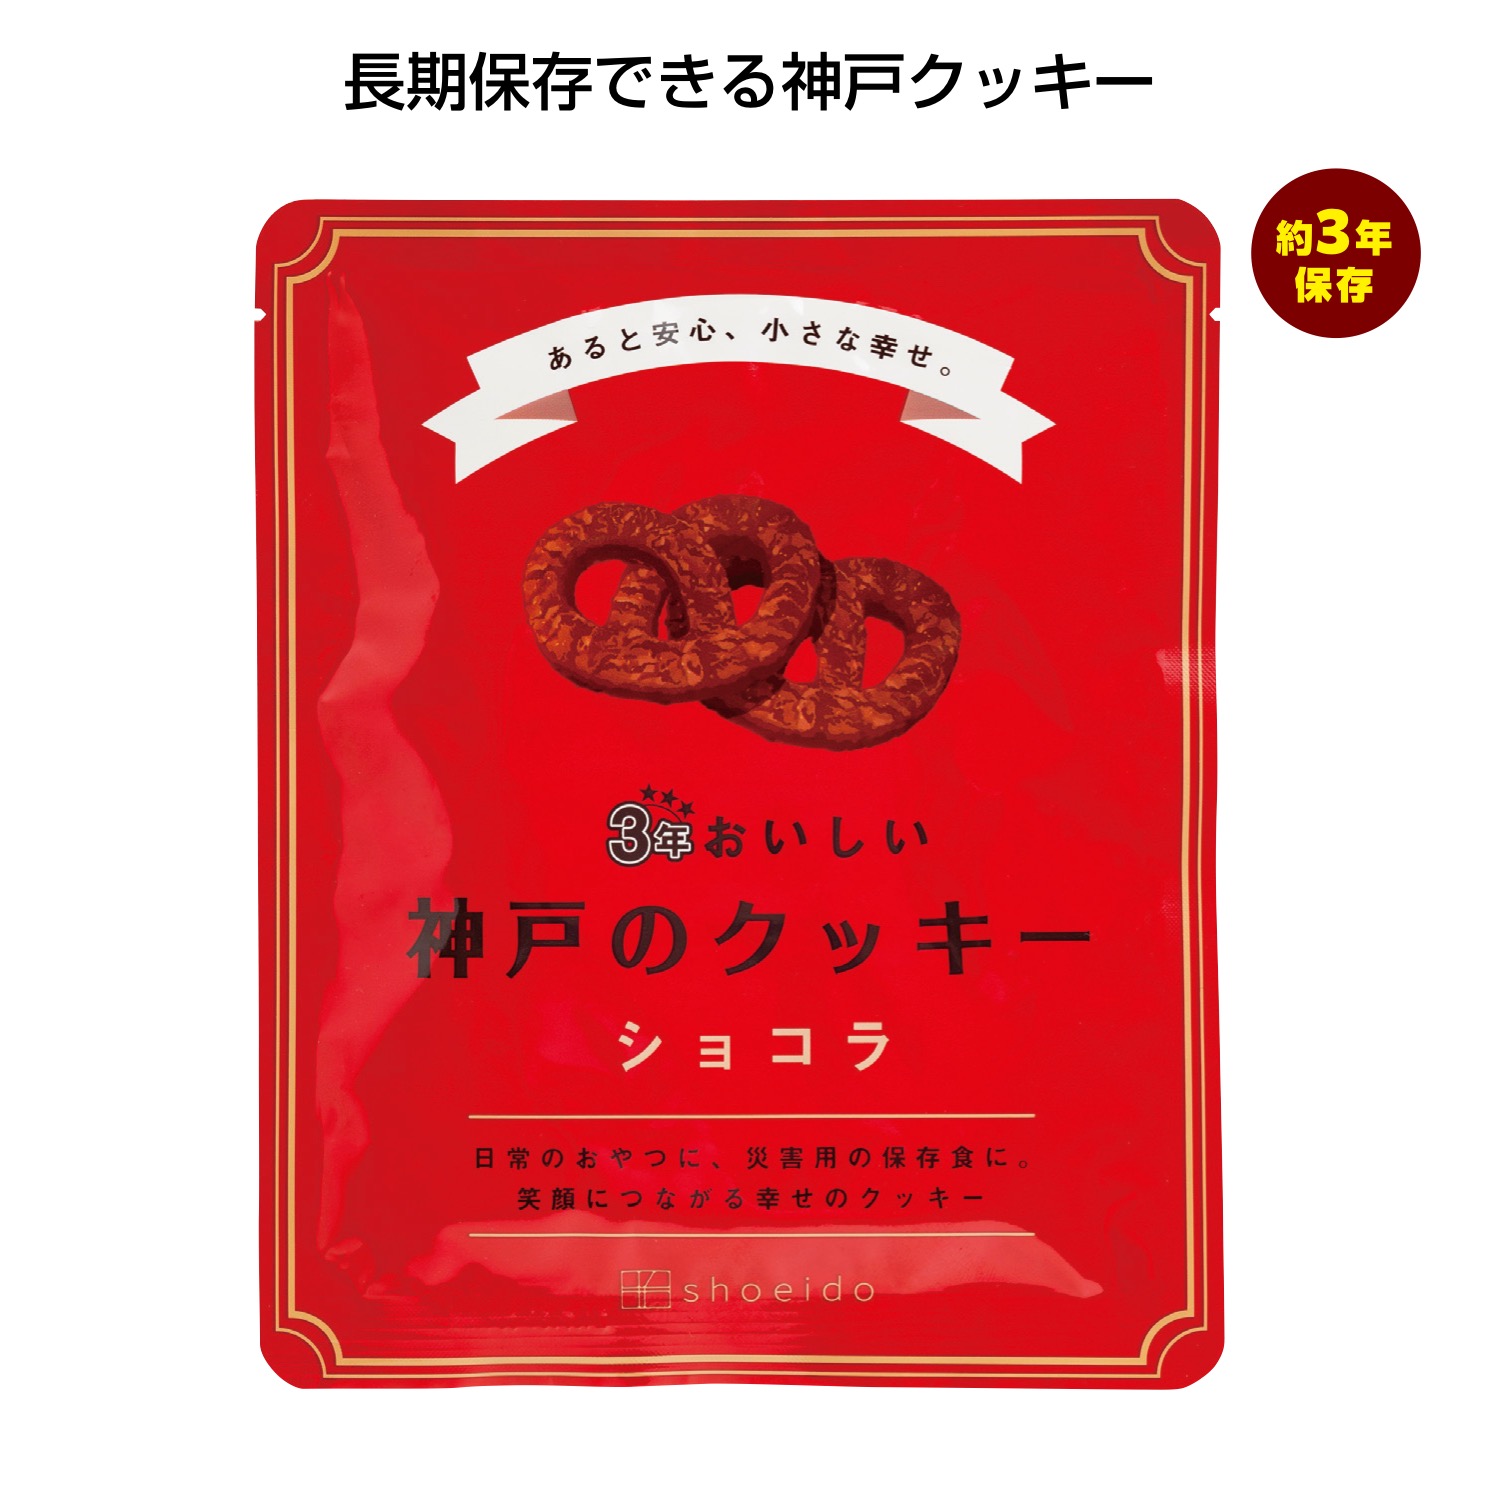 3年おいしい神戸のクッキー ショコラ